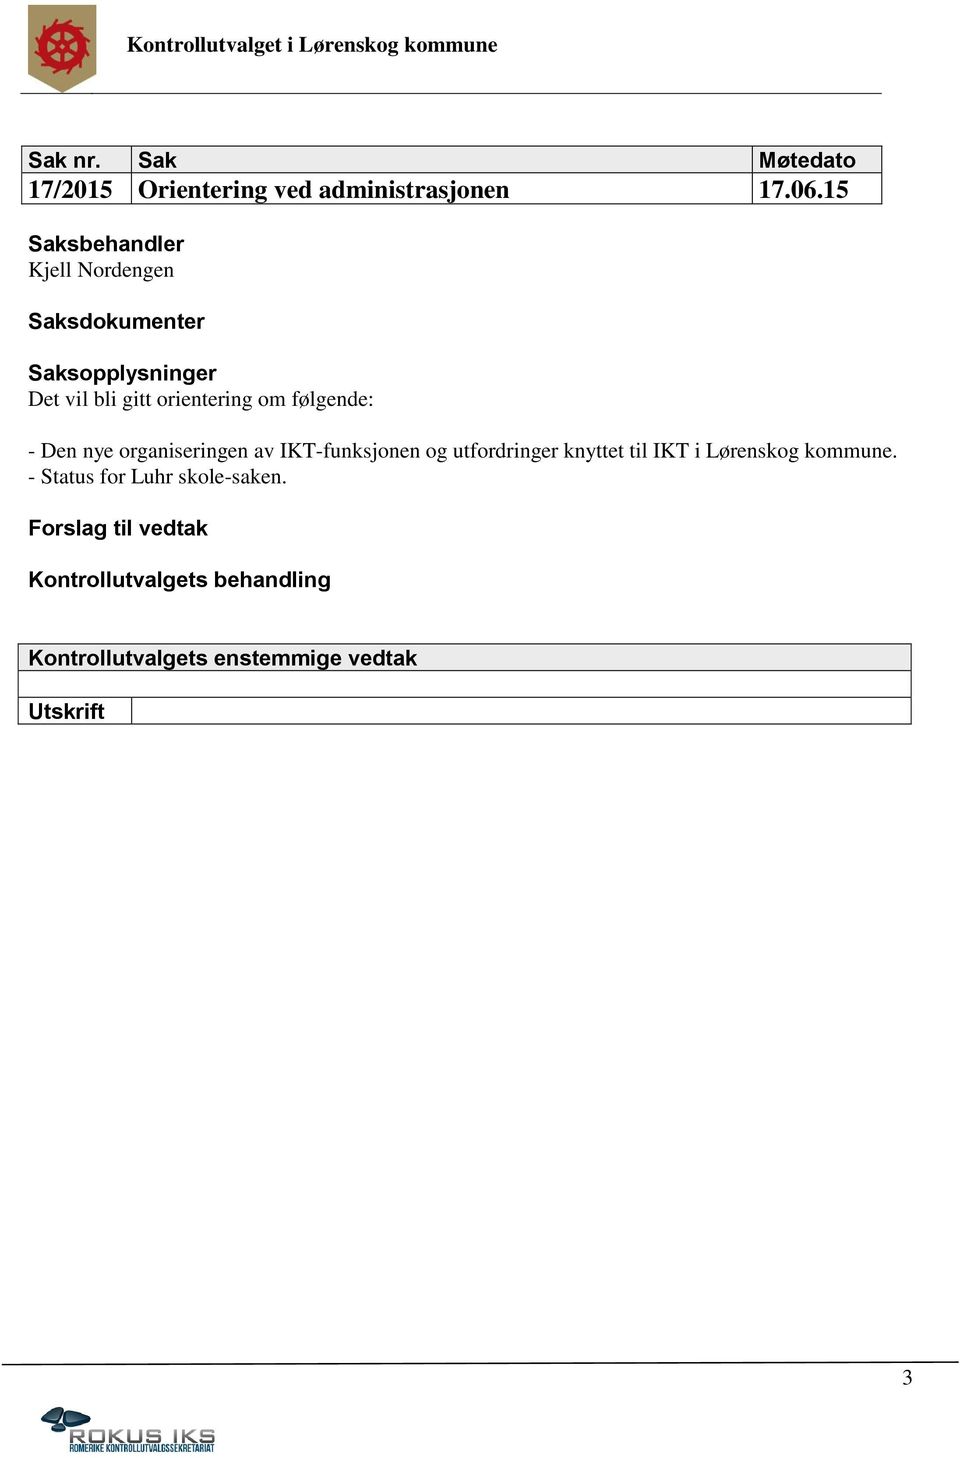 Den nye organiseringen av IKT-funksjonen og utfordringer knyttet til IKT i Lørenskog kommune.